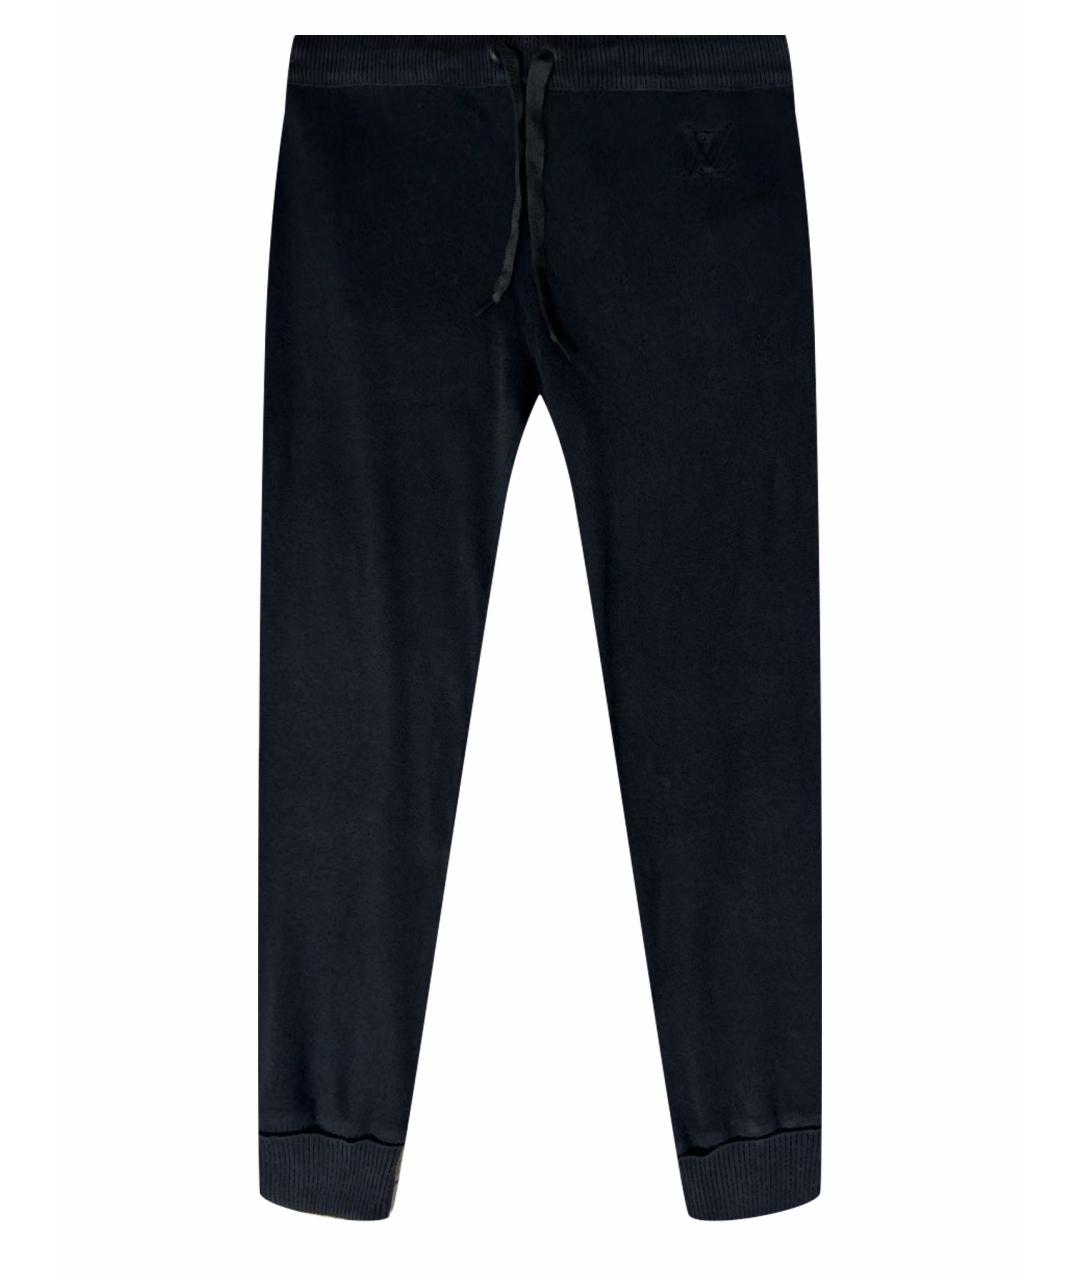 LOUIS VUITTON PRE-OWNED Черные кашемировые спортивные брюки и шорты, фото 1